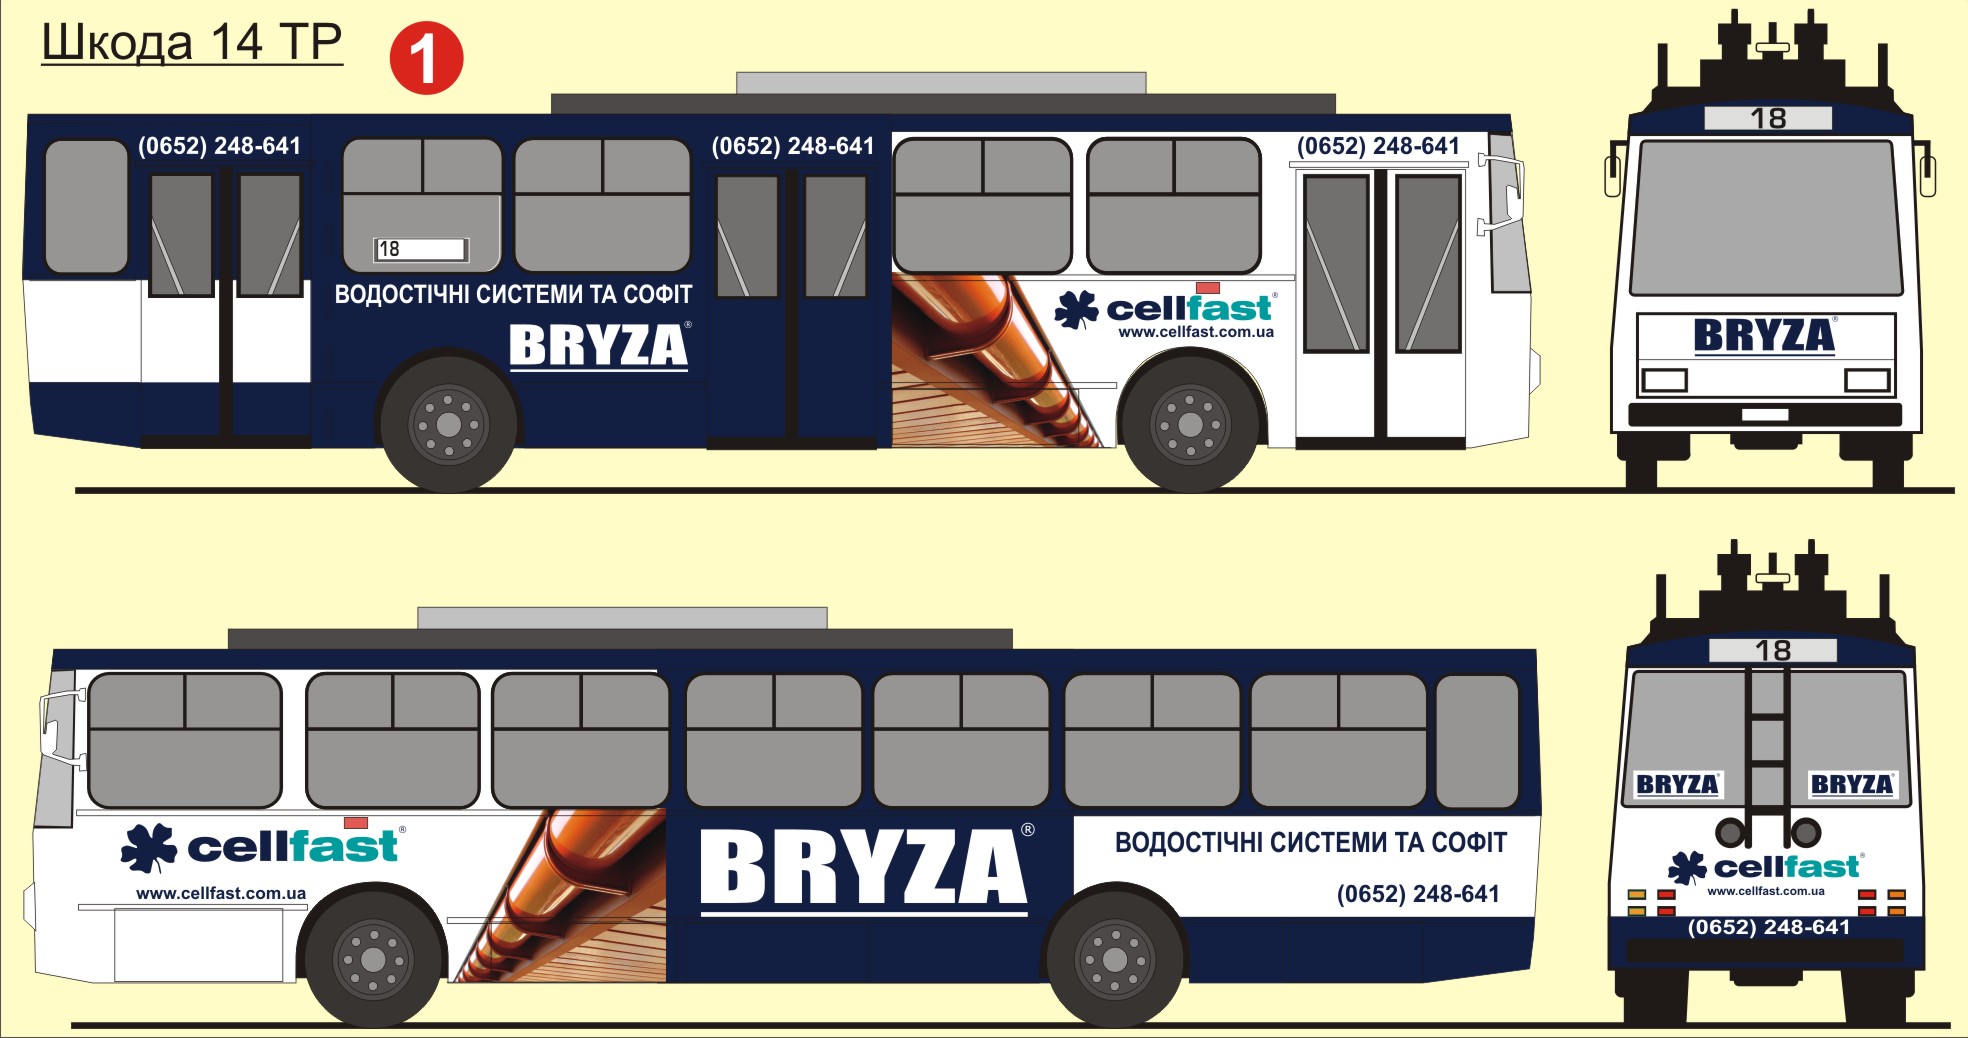 Брендирование общественного транспорта для ТМ "Bryza"